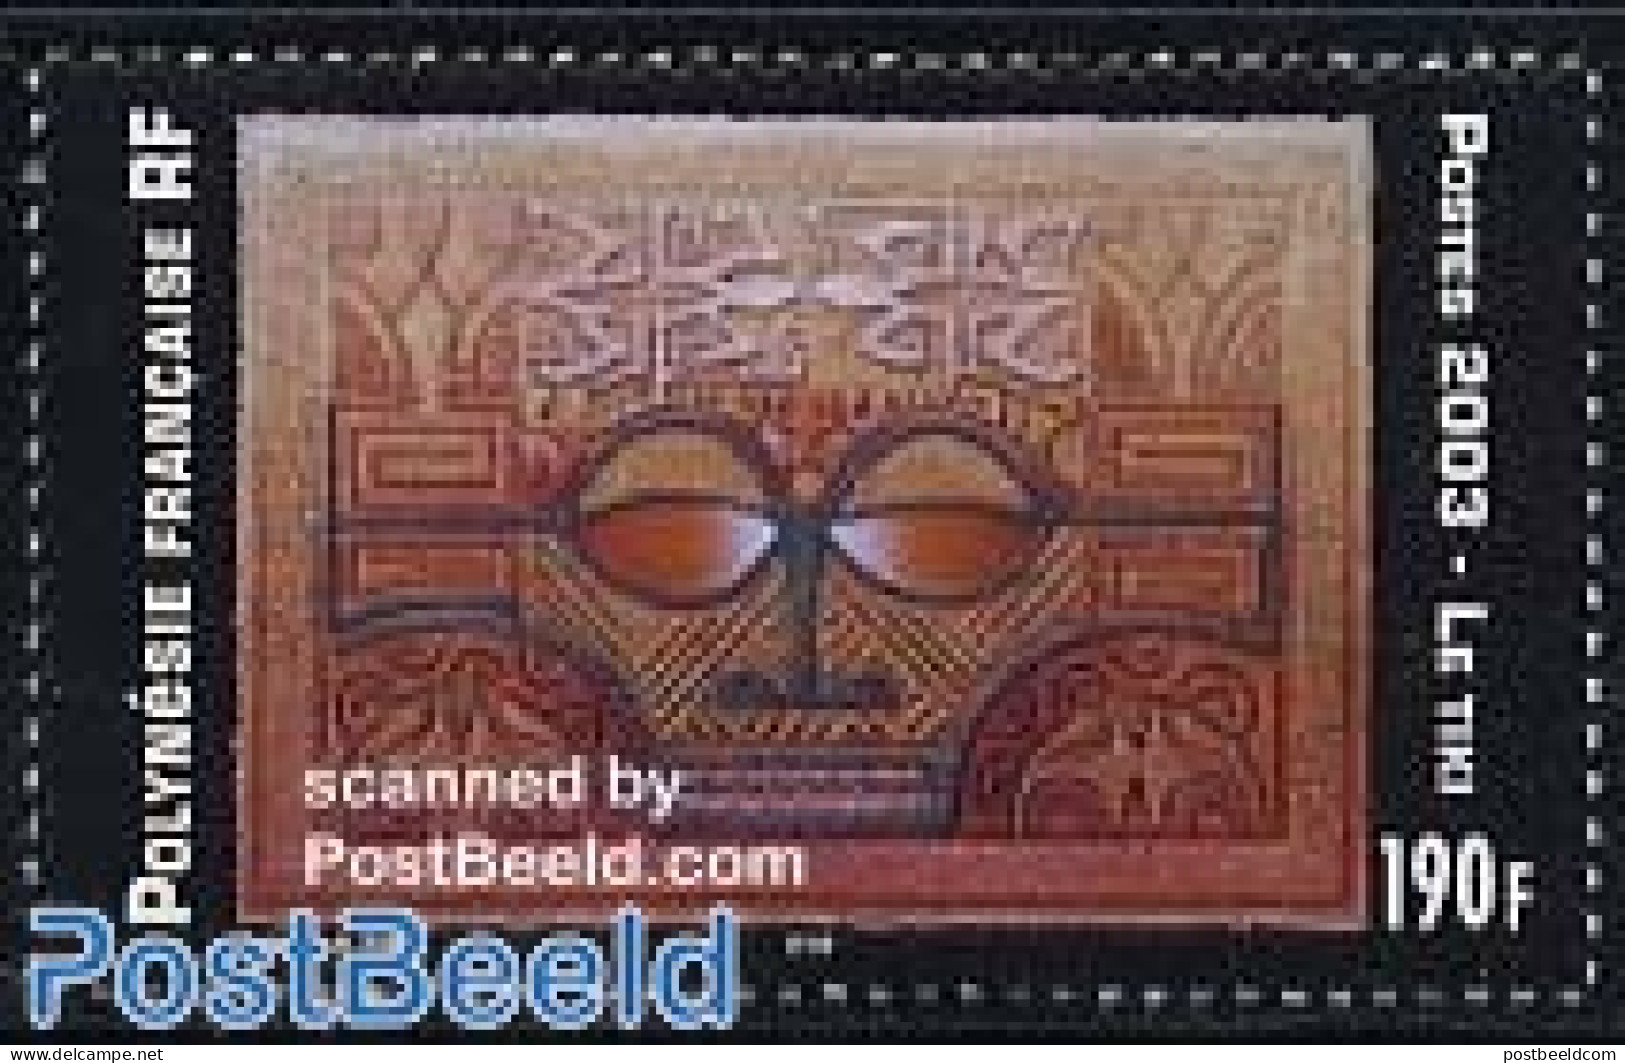 French Polynesia 2003 Tiki 1v, Mint NH, Art - Handicrafts - Neufs